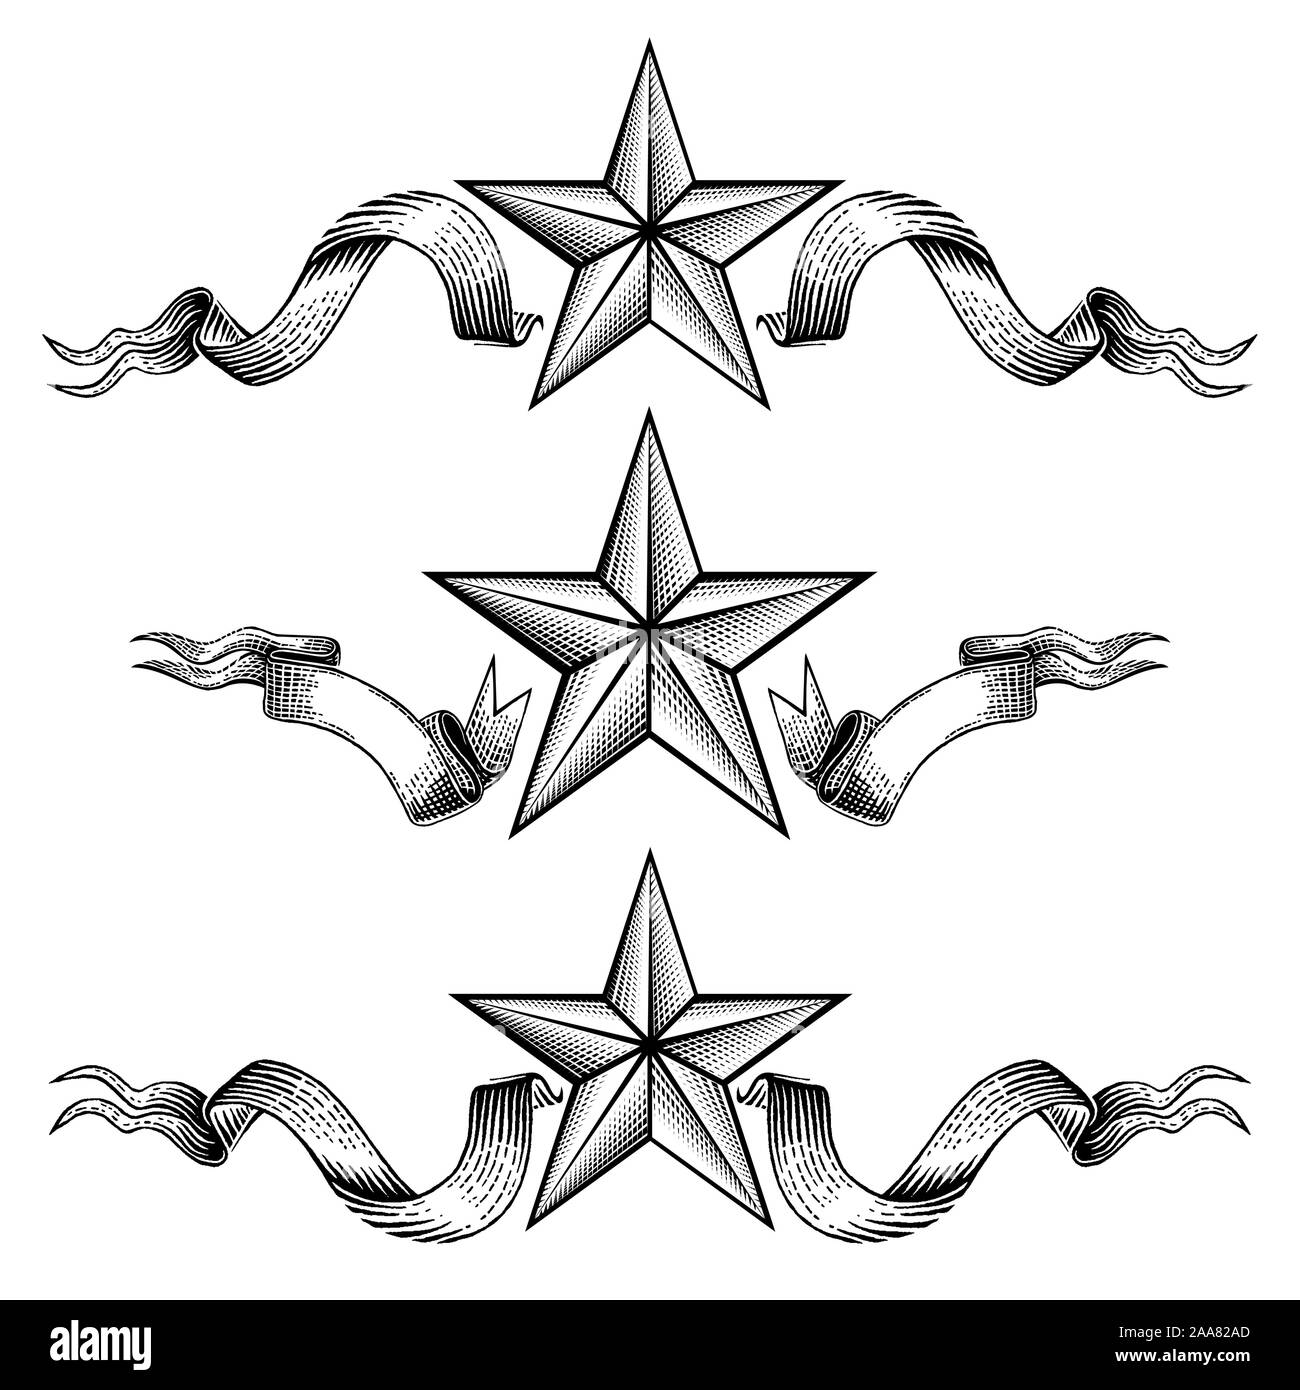 western star clip art free